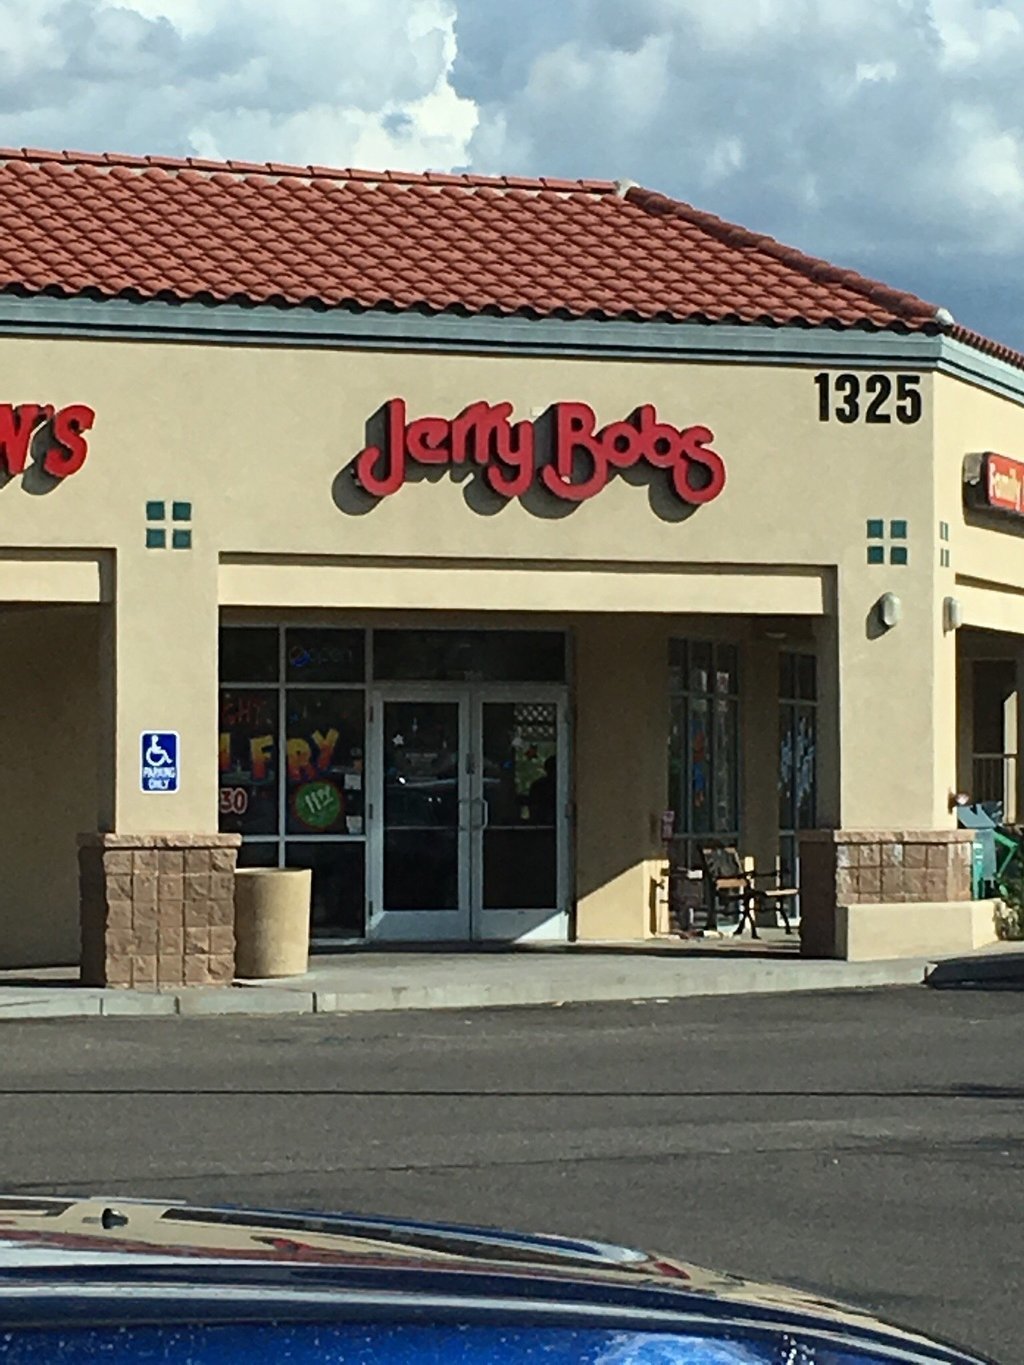 JerryBobs Restaurant